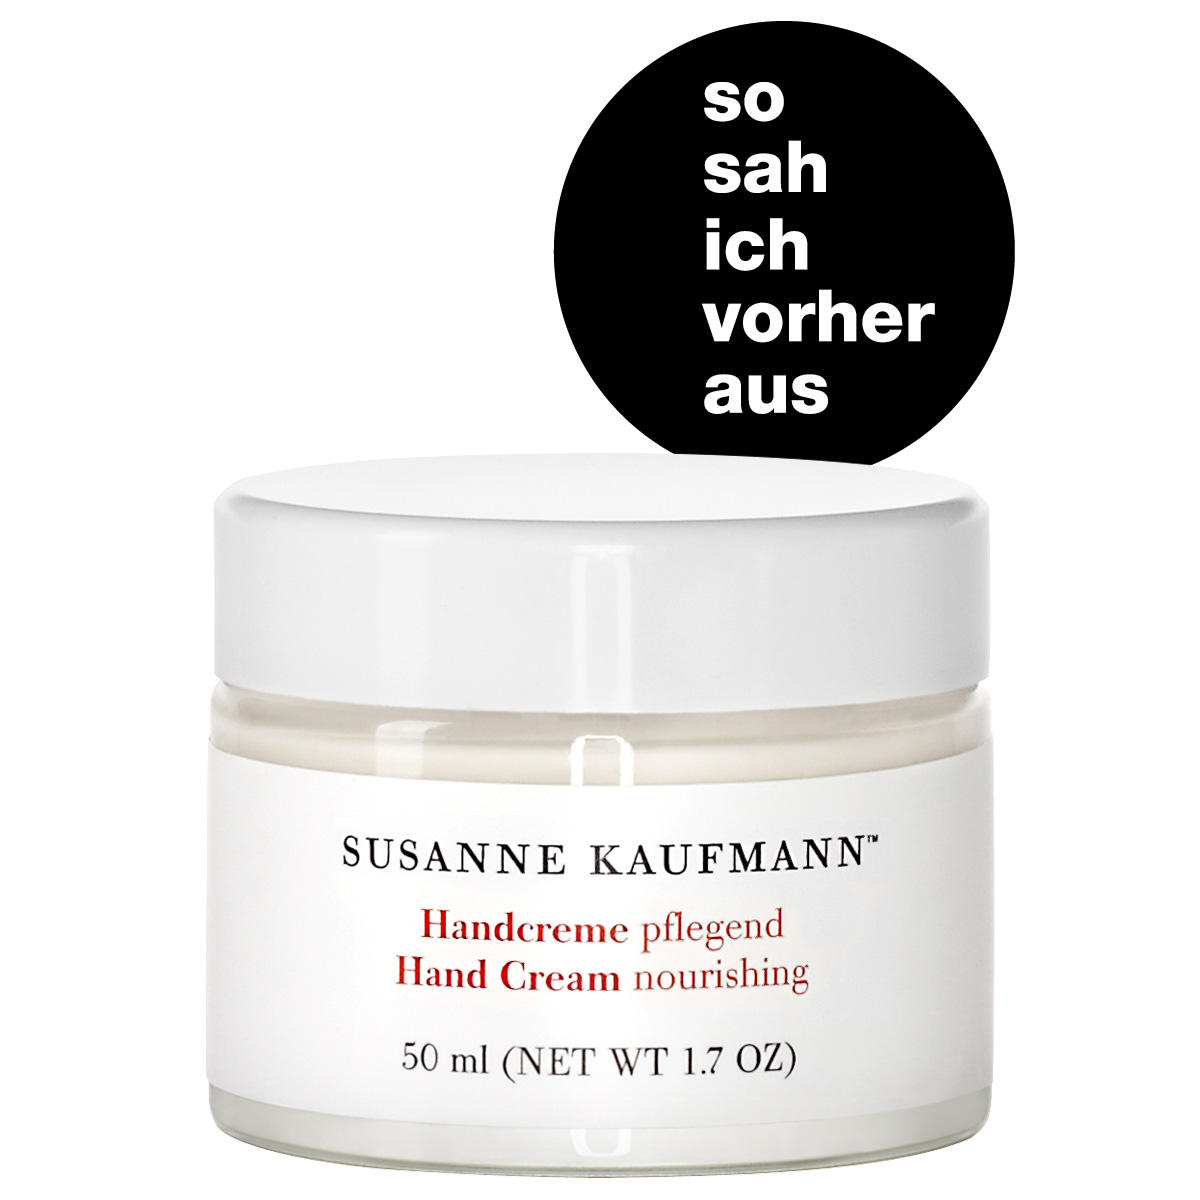 Susanne Kaufmann Handcreme pflegend - Hand Cream 50 ml - 2